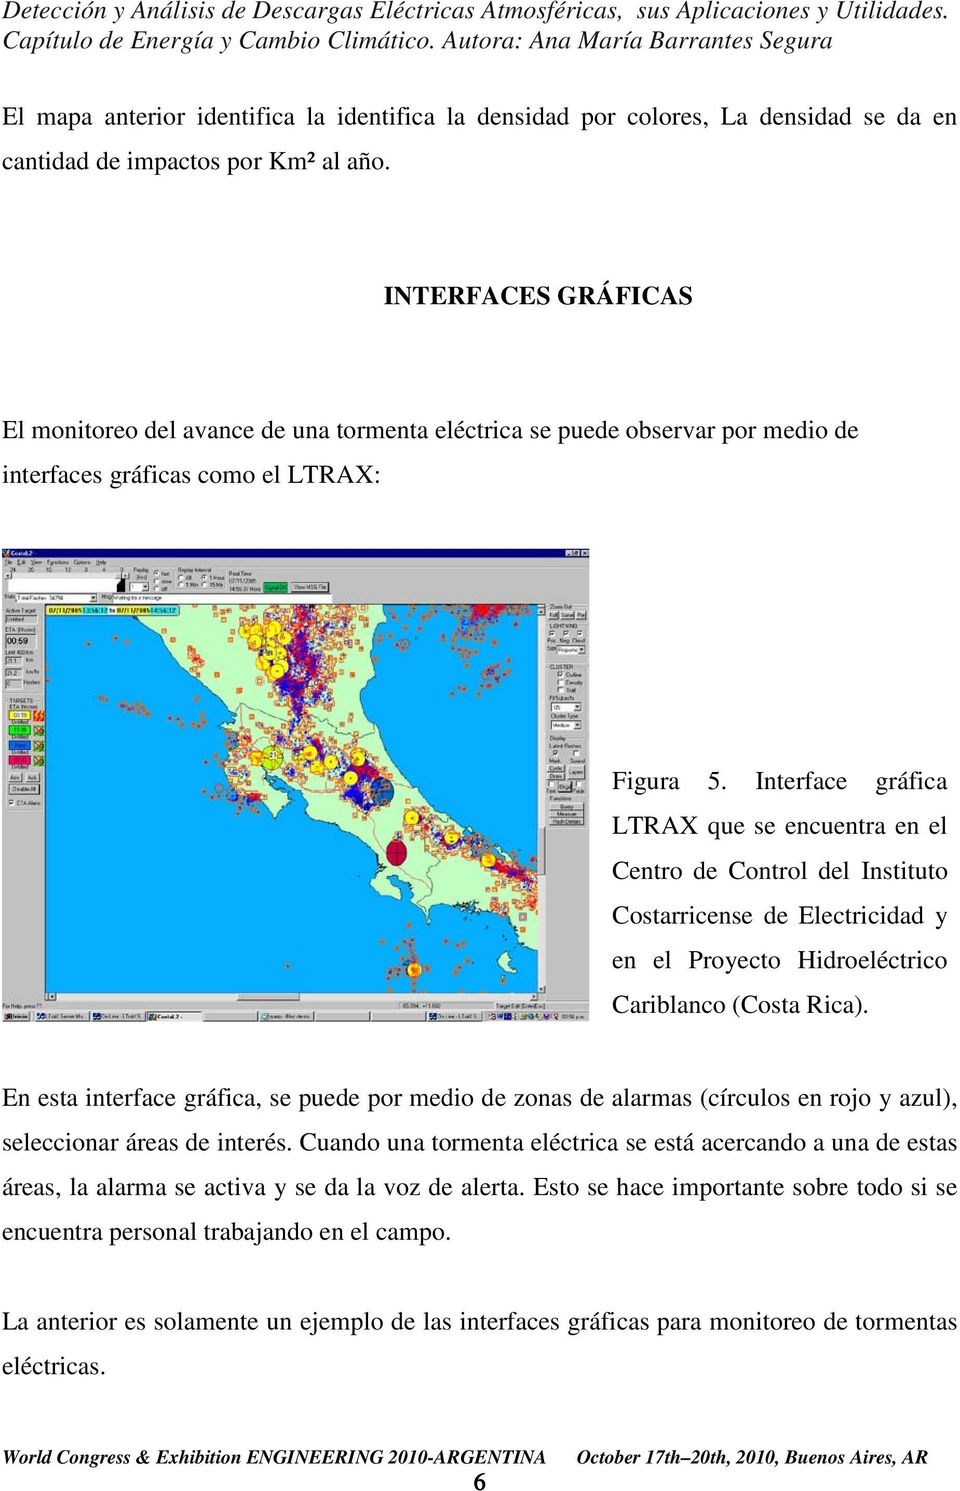 Interface gráfica LTRAX que se encuentra en el Centro de Control del Instituto Costarricense de Electricidad y en el Proyecto Hidroeléctrico Cariblanco (Costa Rica).